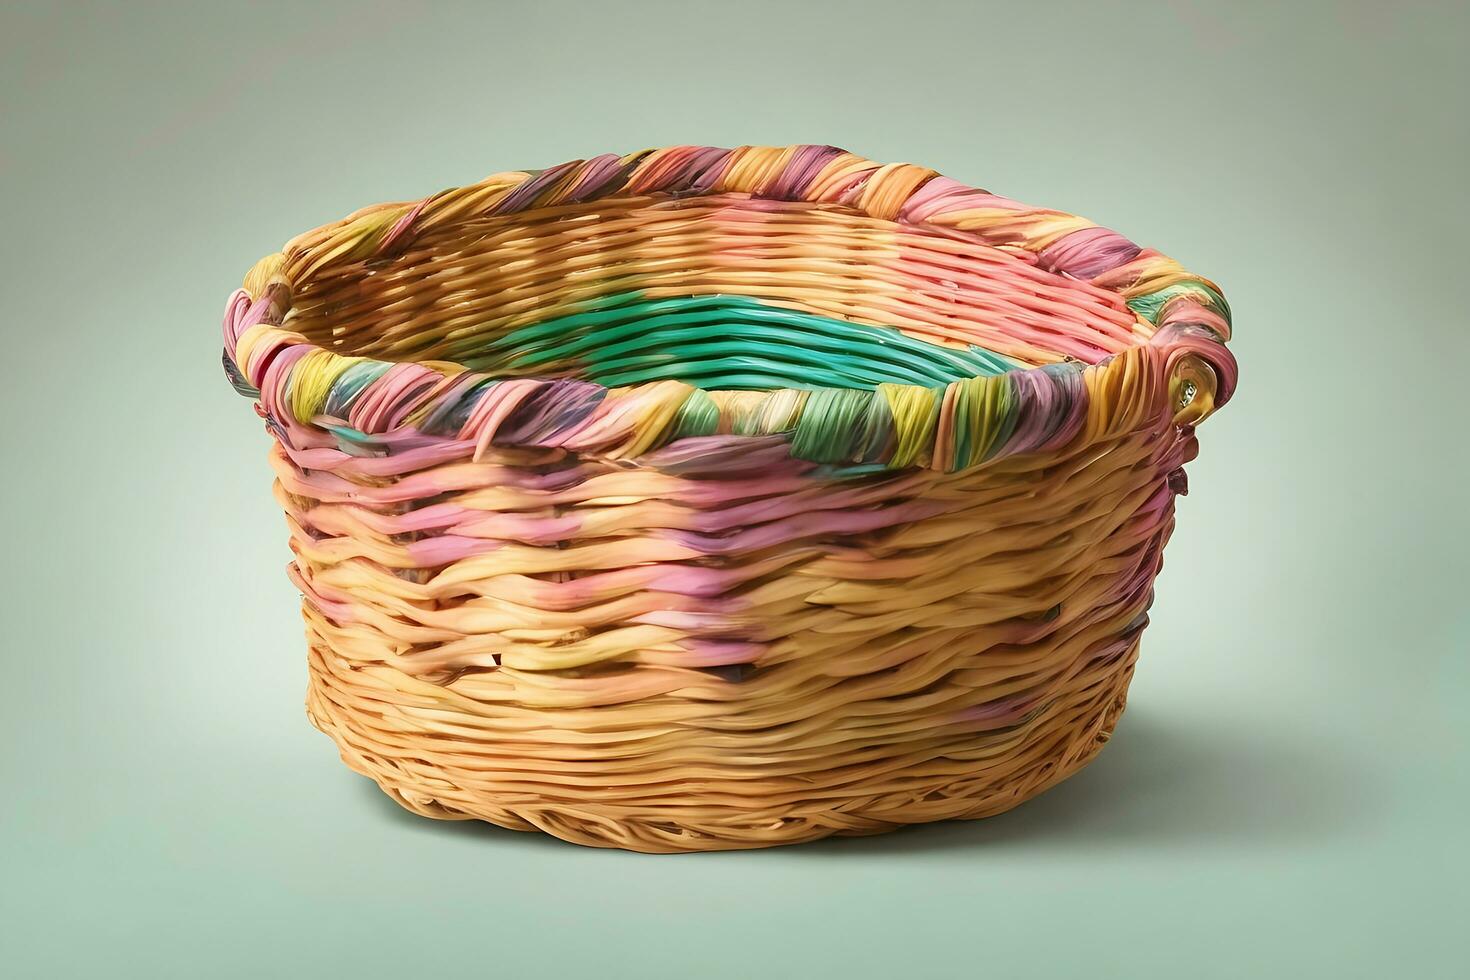 compras saco esvaziar vime cesta com vibrante cores, ai gerado livre foto